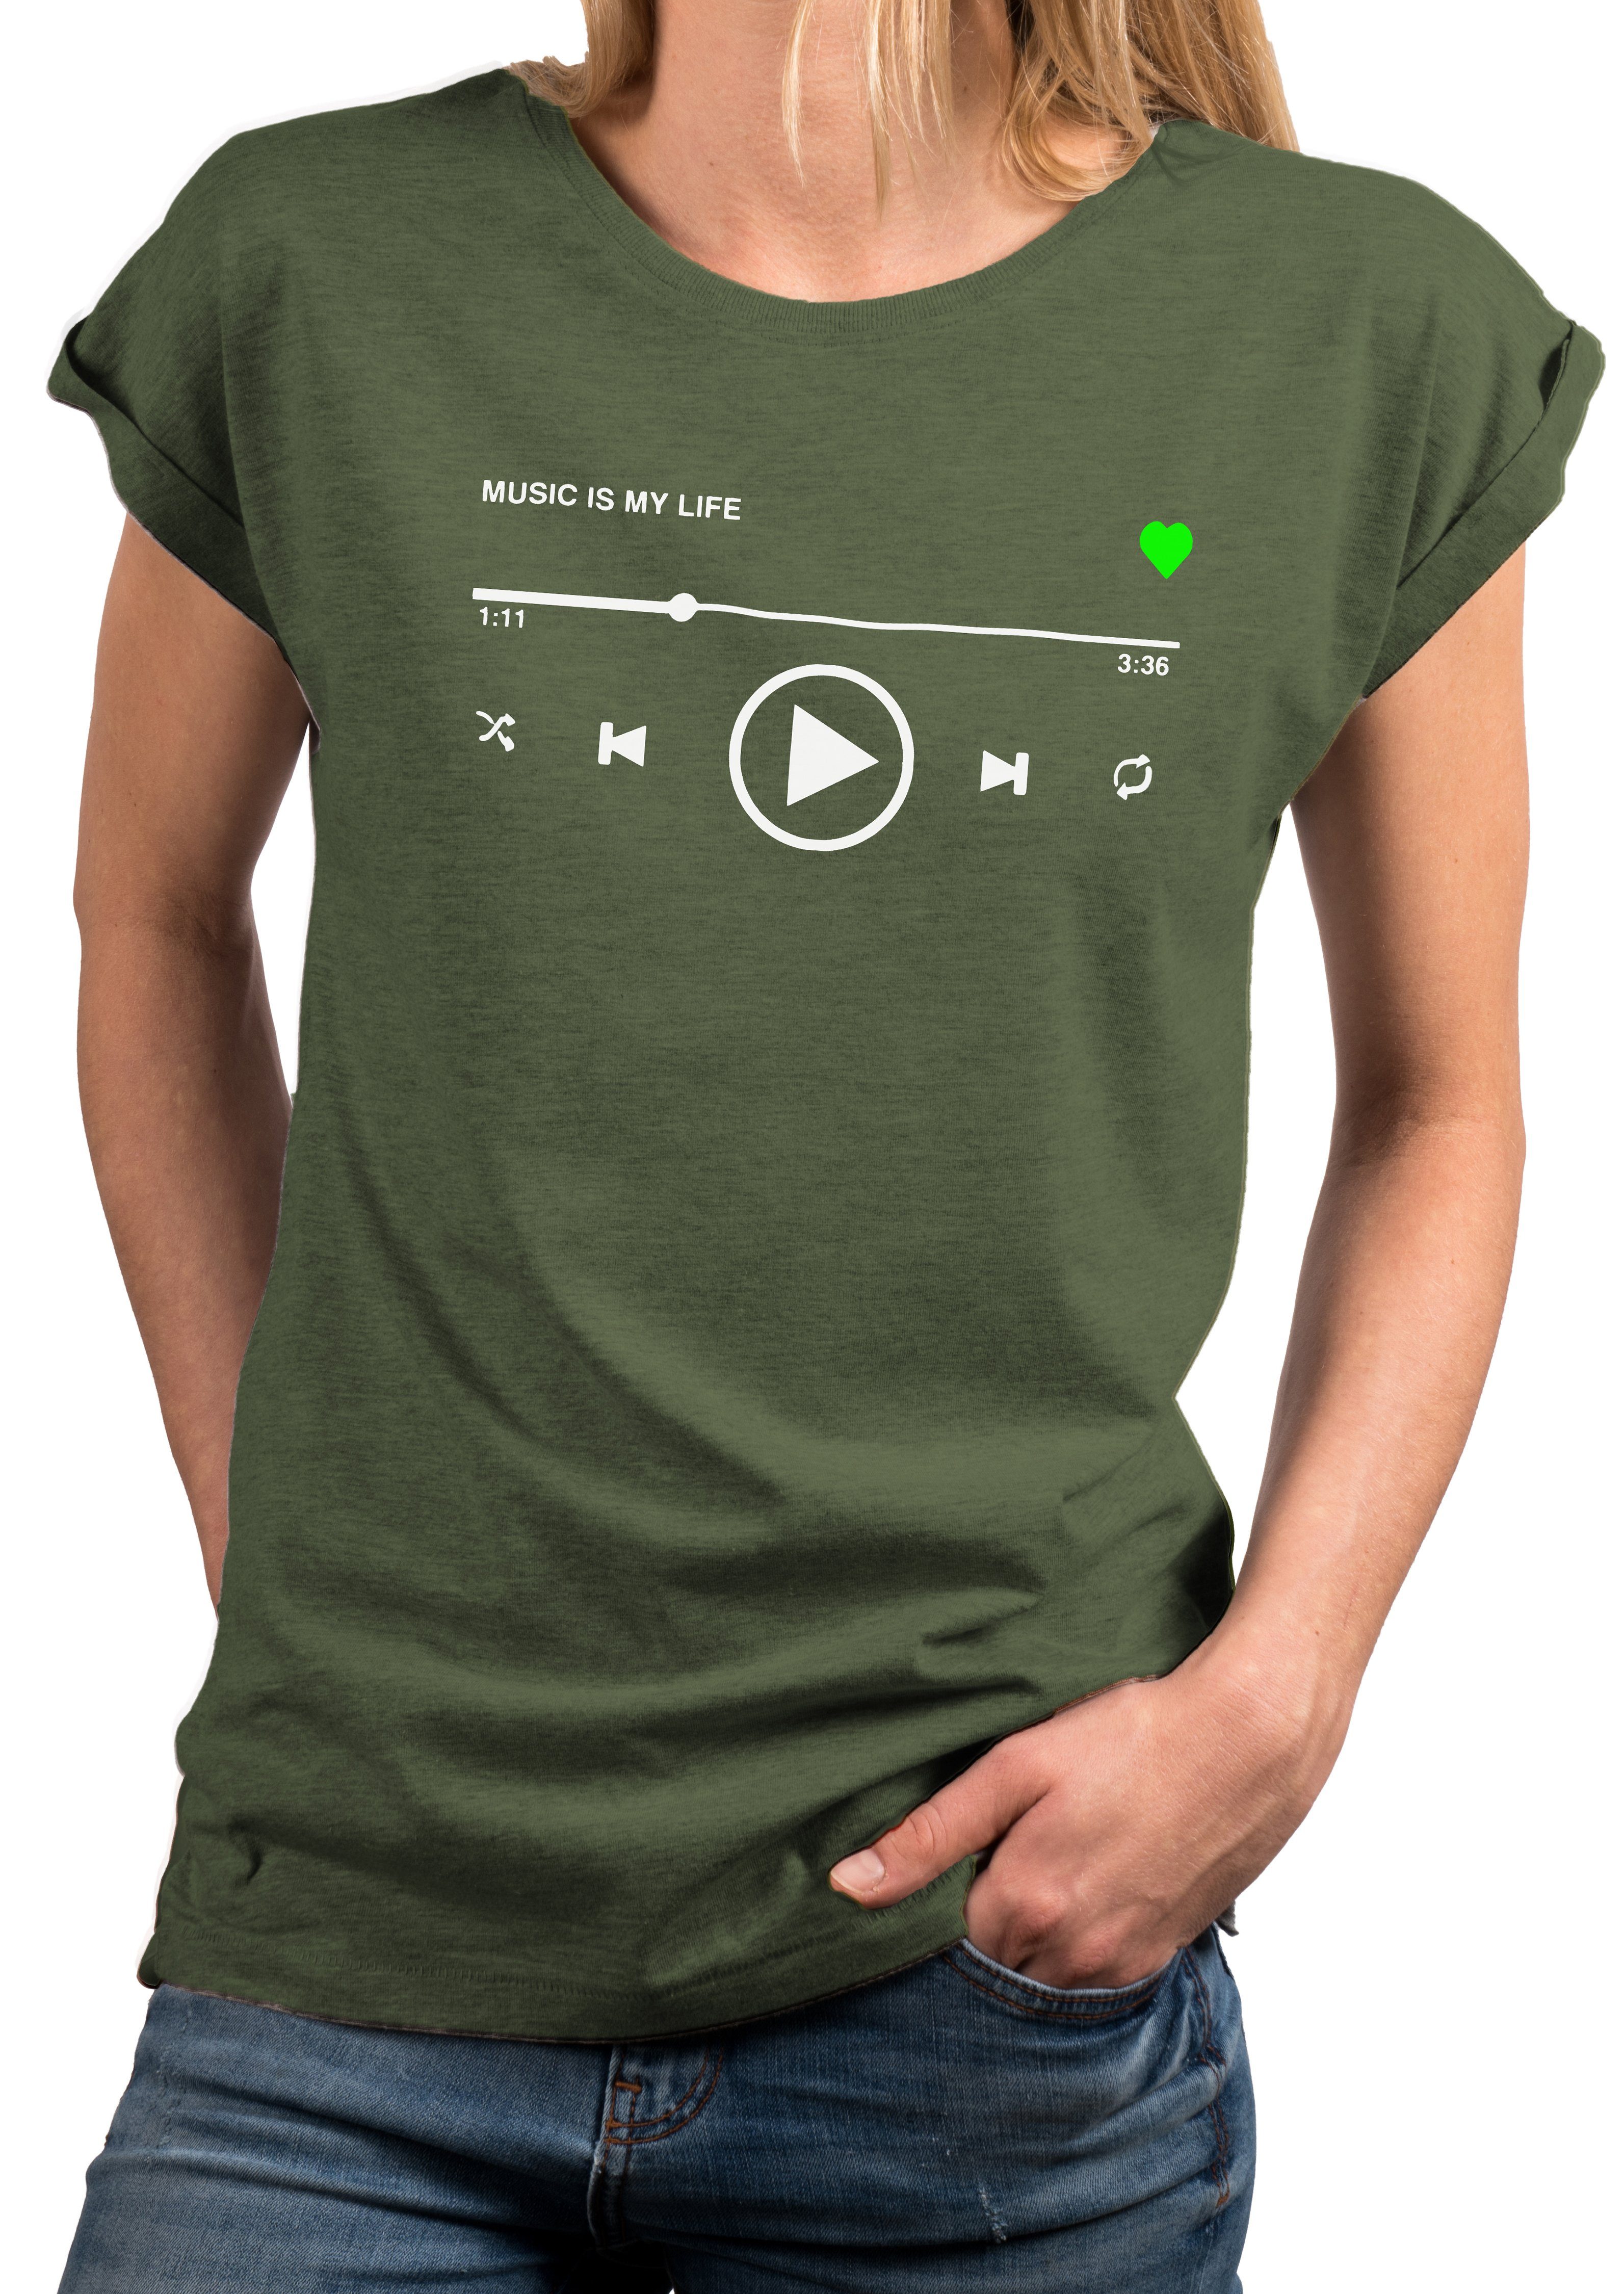 Print-Shirt Kurzarmshirt, Sommer MAKAYA Aufdruck Musik Größen große Kurzarm Motiv Grün Top Damen Baumwolle